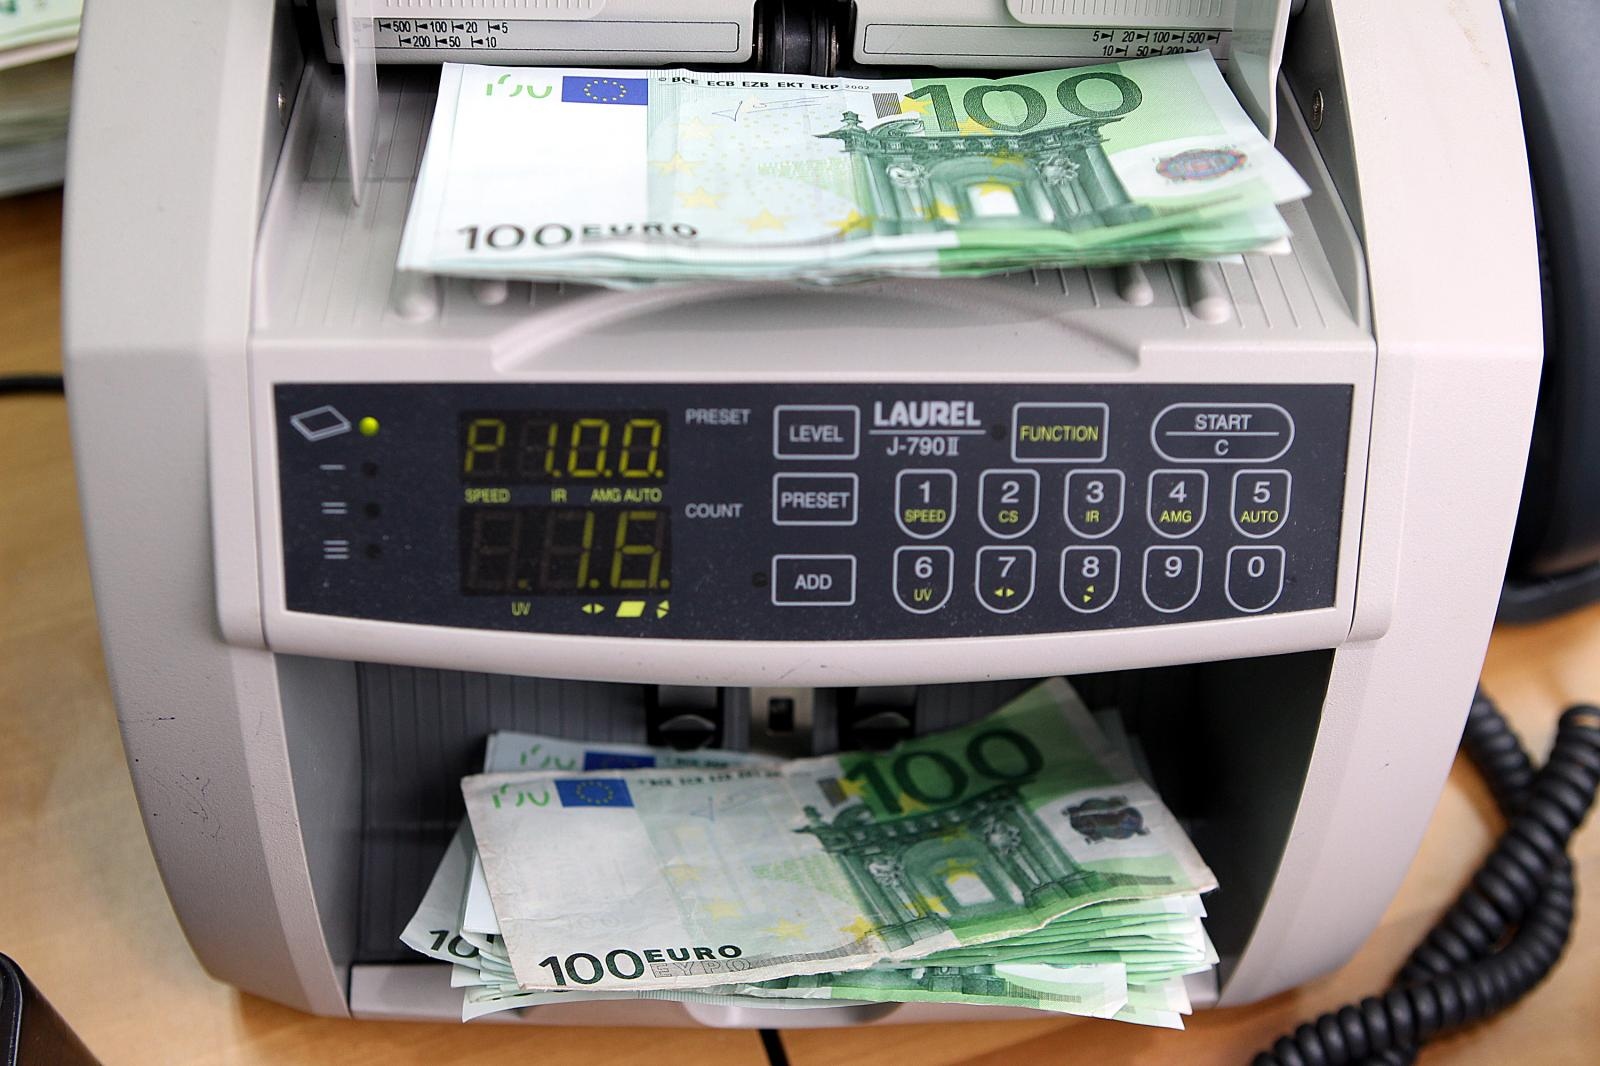 Dubrovčanin u mjenjačnici za 800 kuna dobio samo 70 eura: Tražio djelatnicu da stornira račun, ali je rekla da to nije moguće - Poslovni dnevnik